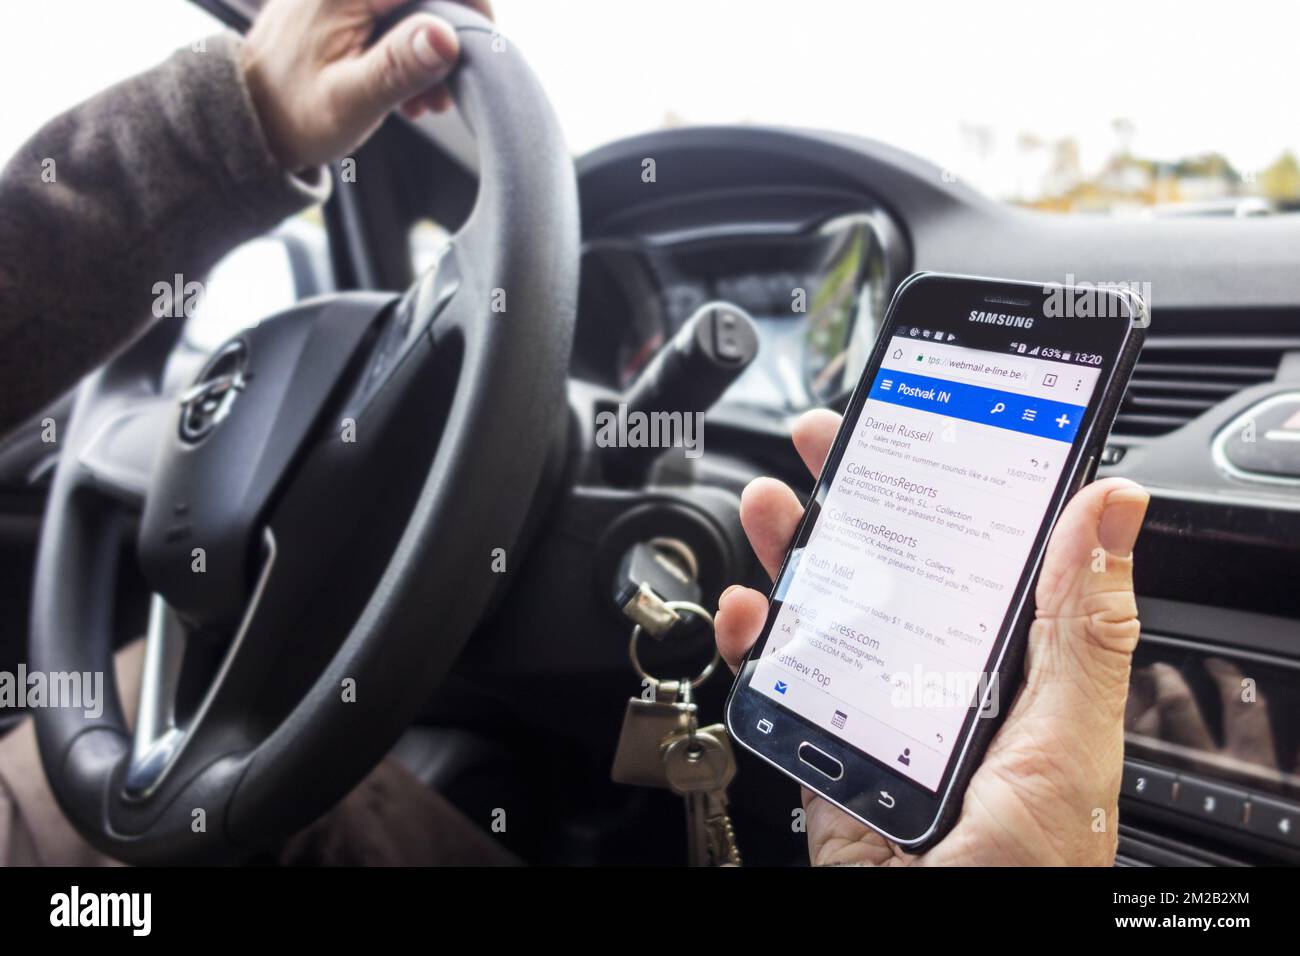 Homme irresponsable au volant vérifiant les messages sur smartphone / smartphone / téléphone portable en conduisant sur route | Homme derrière volant messages sur smartphone / téléphone mobile en roulant en voiture 17/11/2017 Banque D'Images